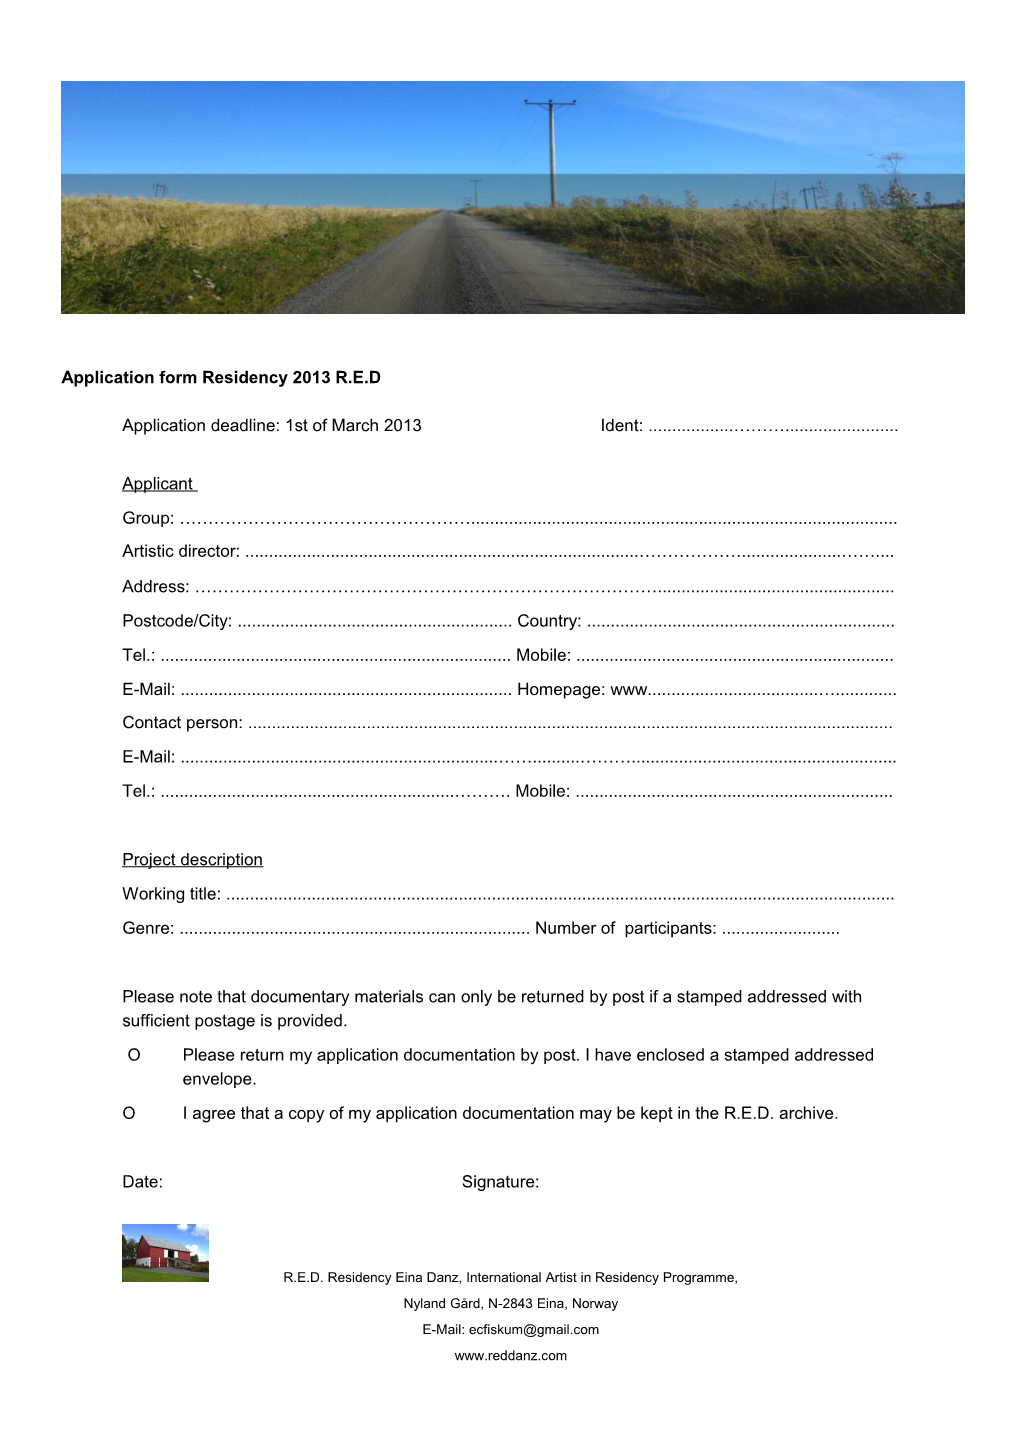 Application Form Residency 2013 R.E.D